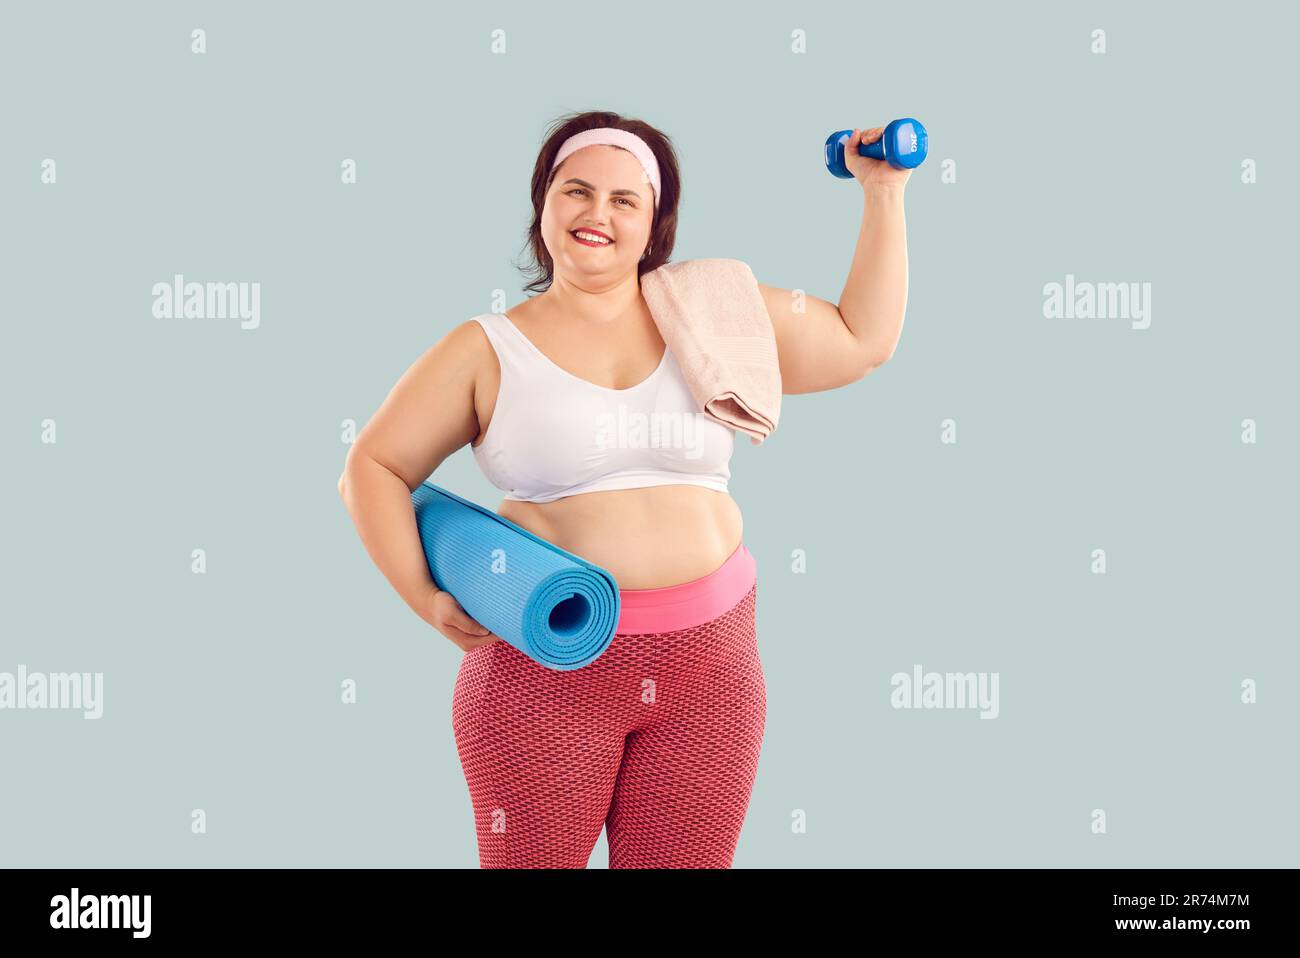 Ritratto di giovane donna felice in sovrappeso con manubri e tappetino fitness Foto Stock